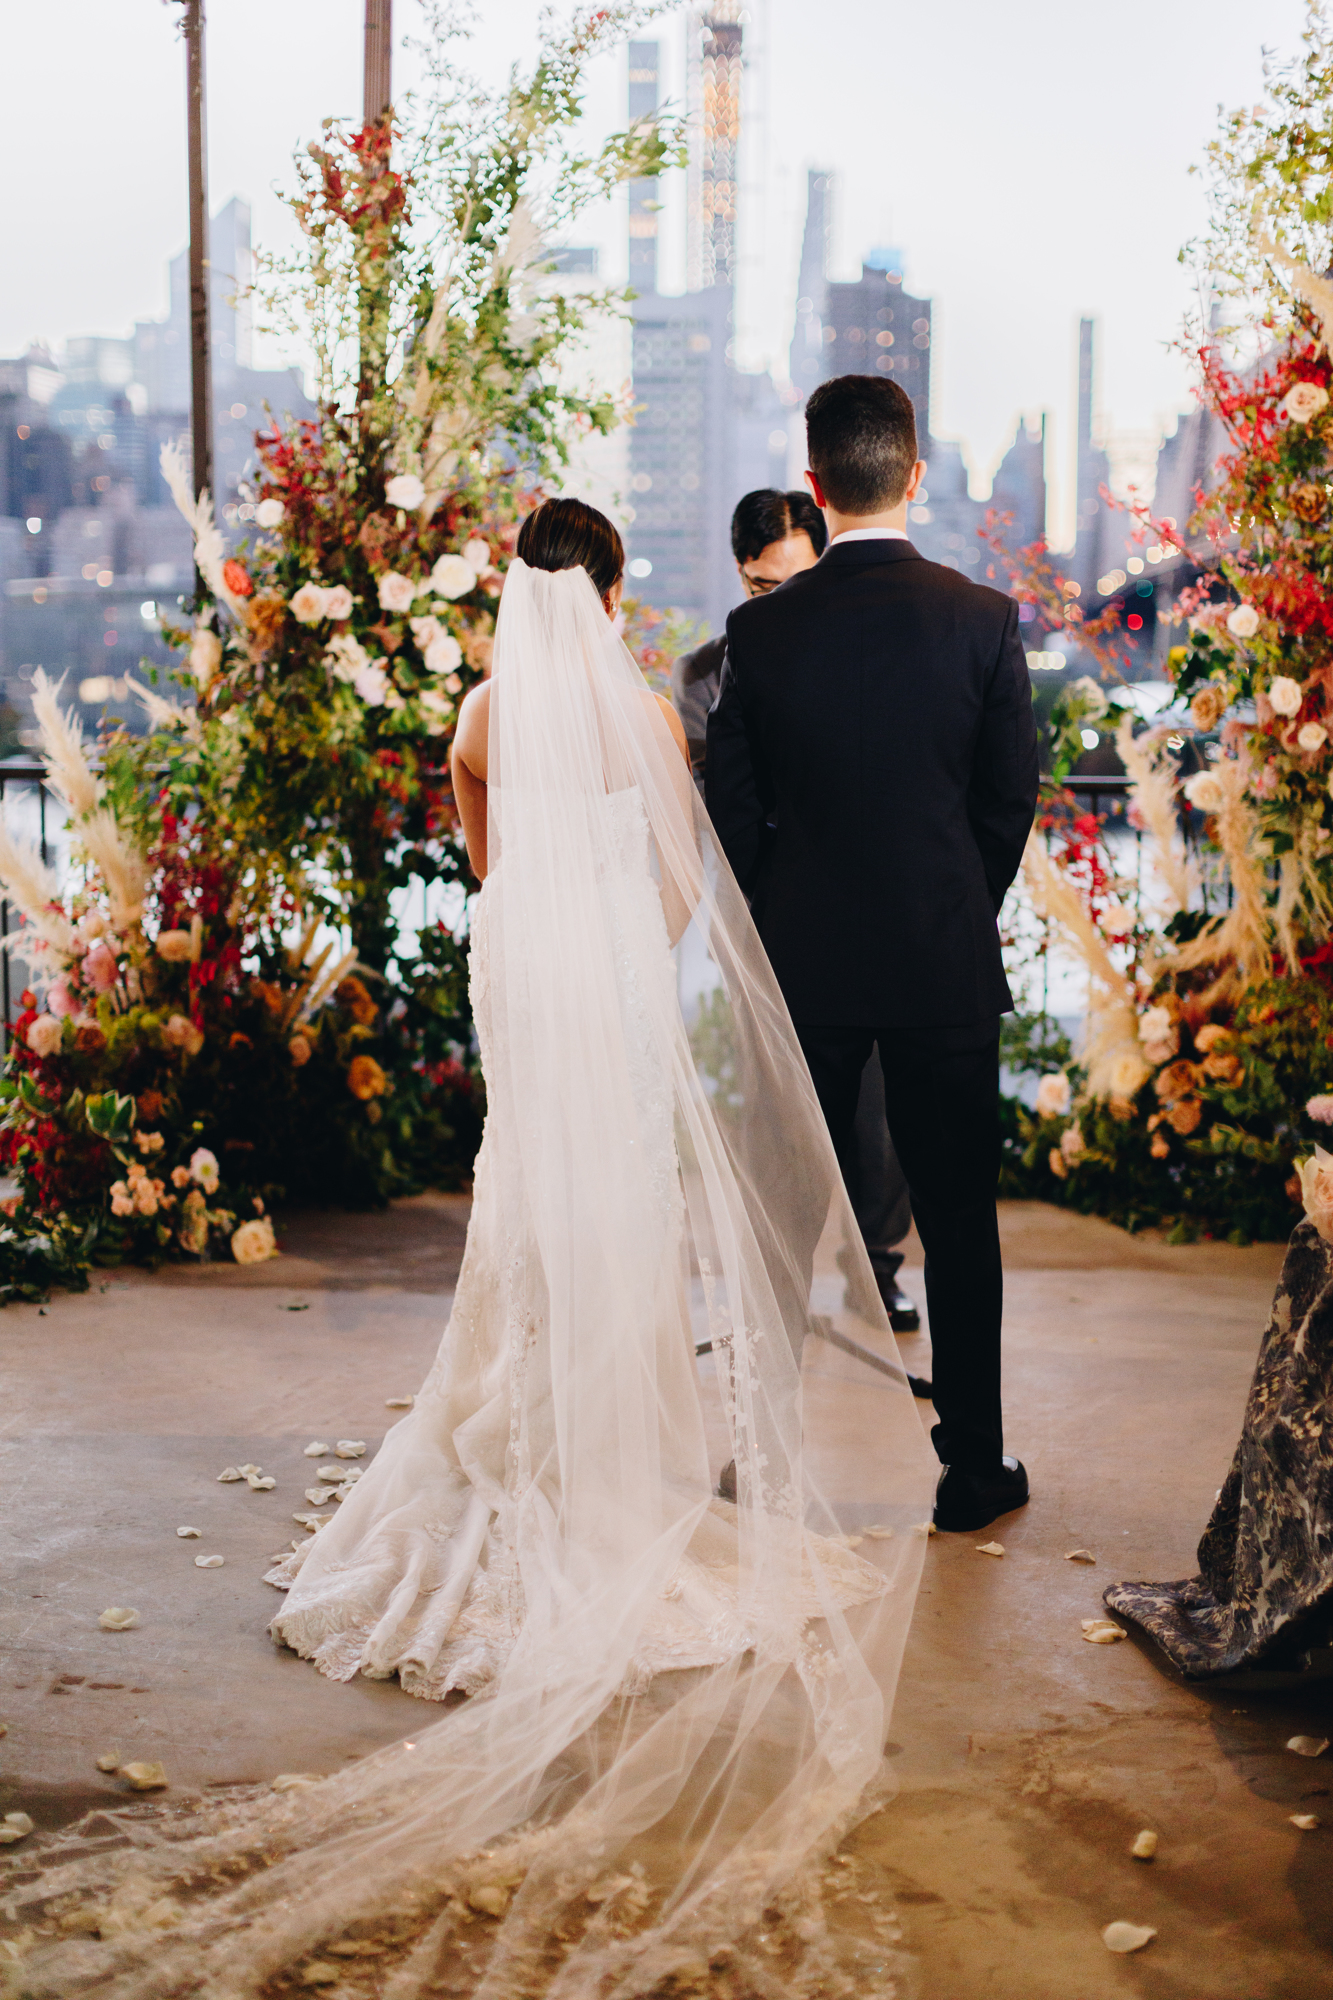 Ravel Hotel wedding ceremony in New York